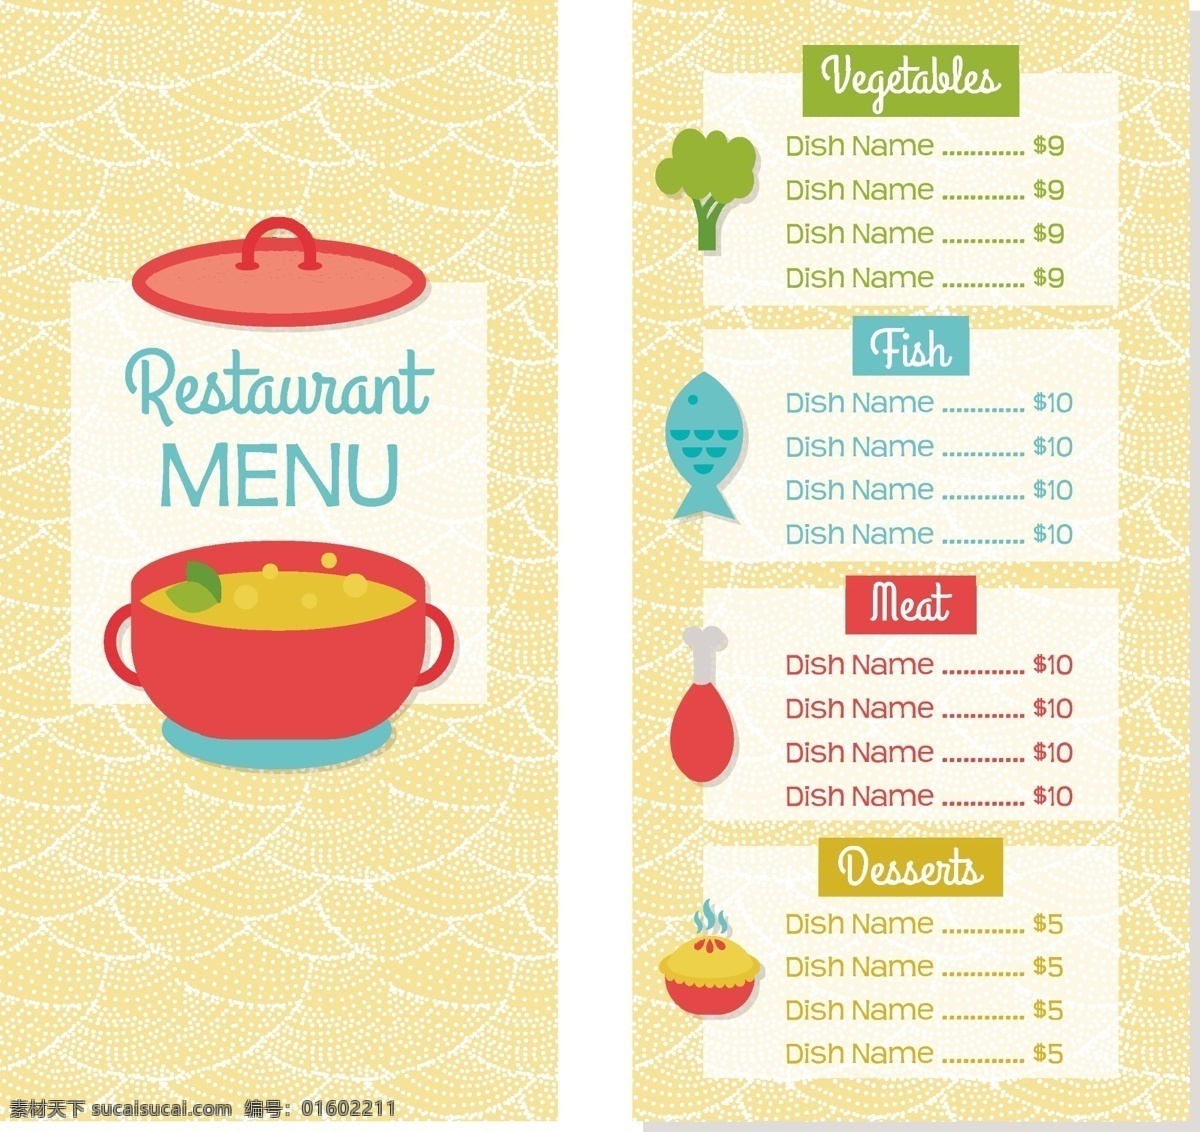 餐厅 菜单 多种颜色 小册子 传单 食物 模板 鱼 厨房 小册子模板 桌子 厨师 蔬菜 水果 传单模板 烹饪 颜色 晚餐 吃 打印